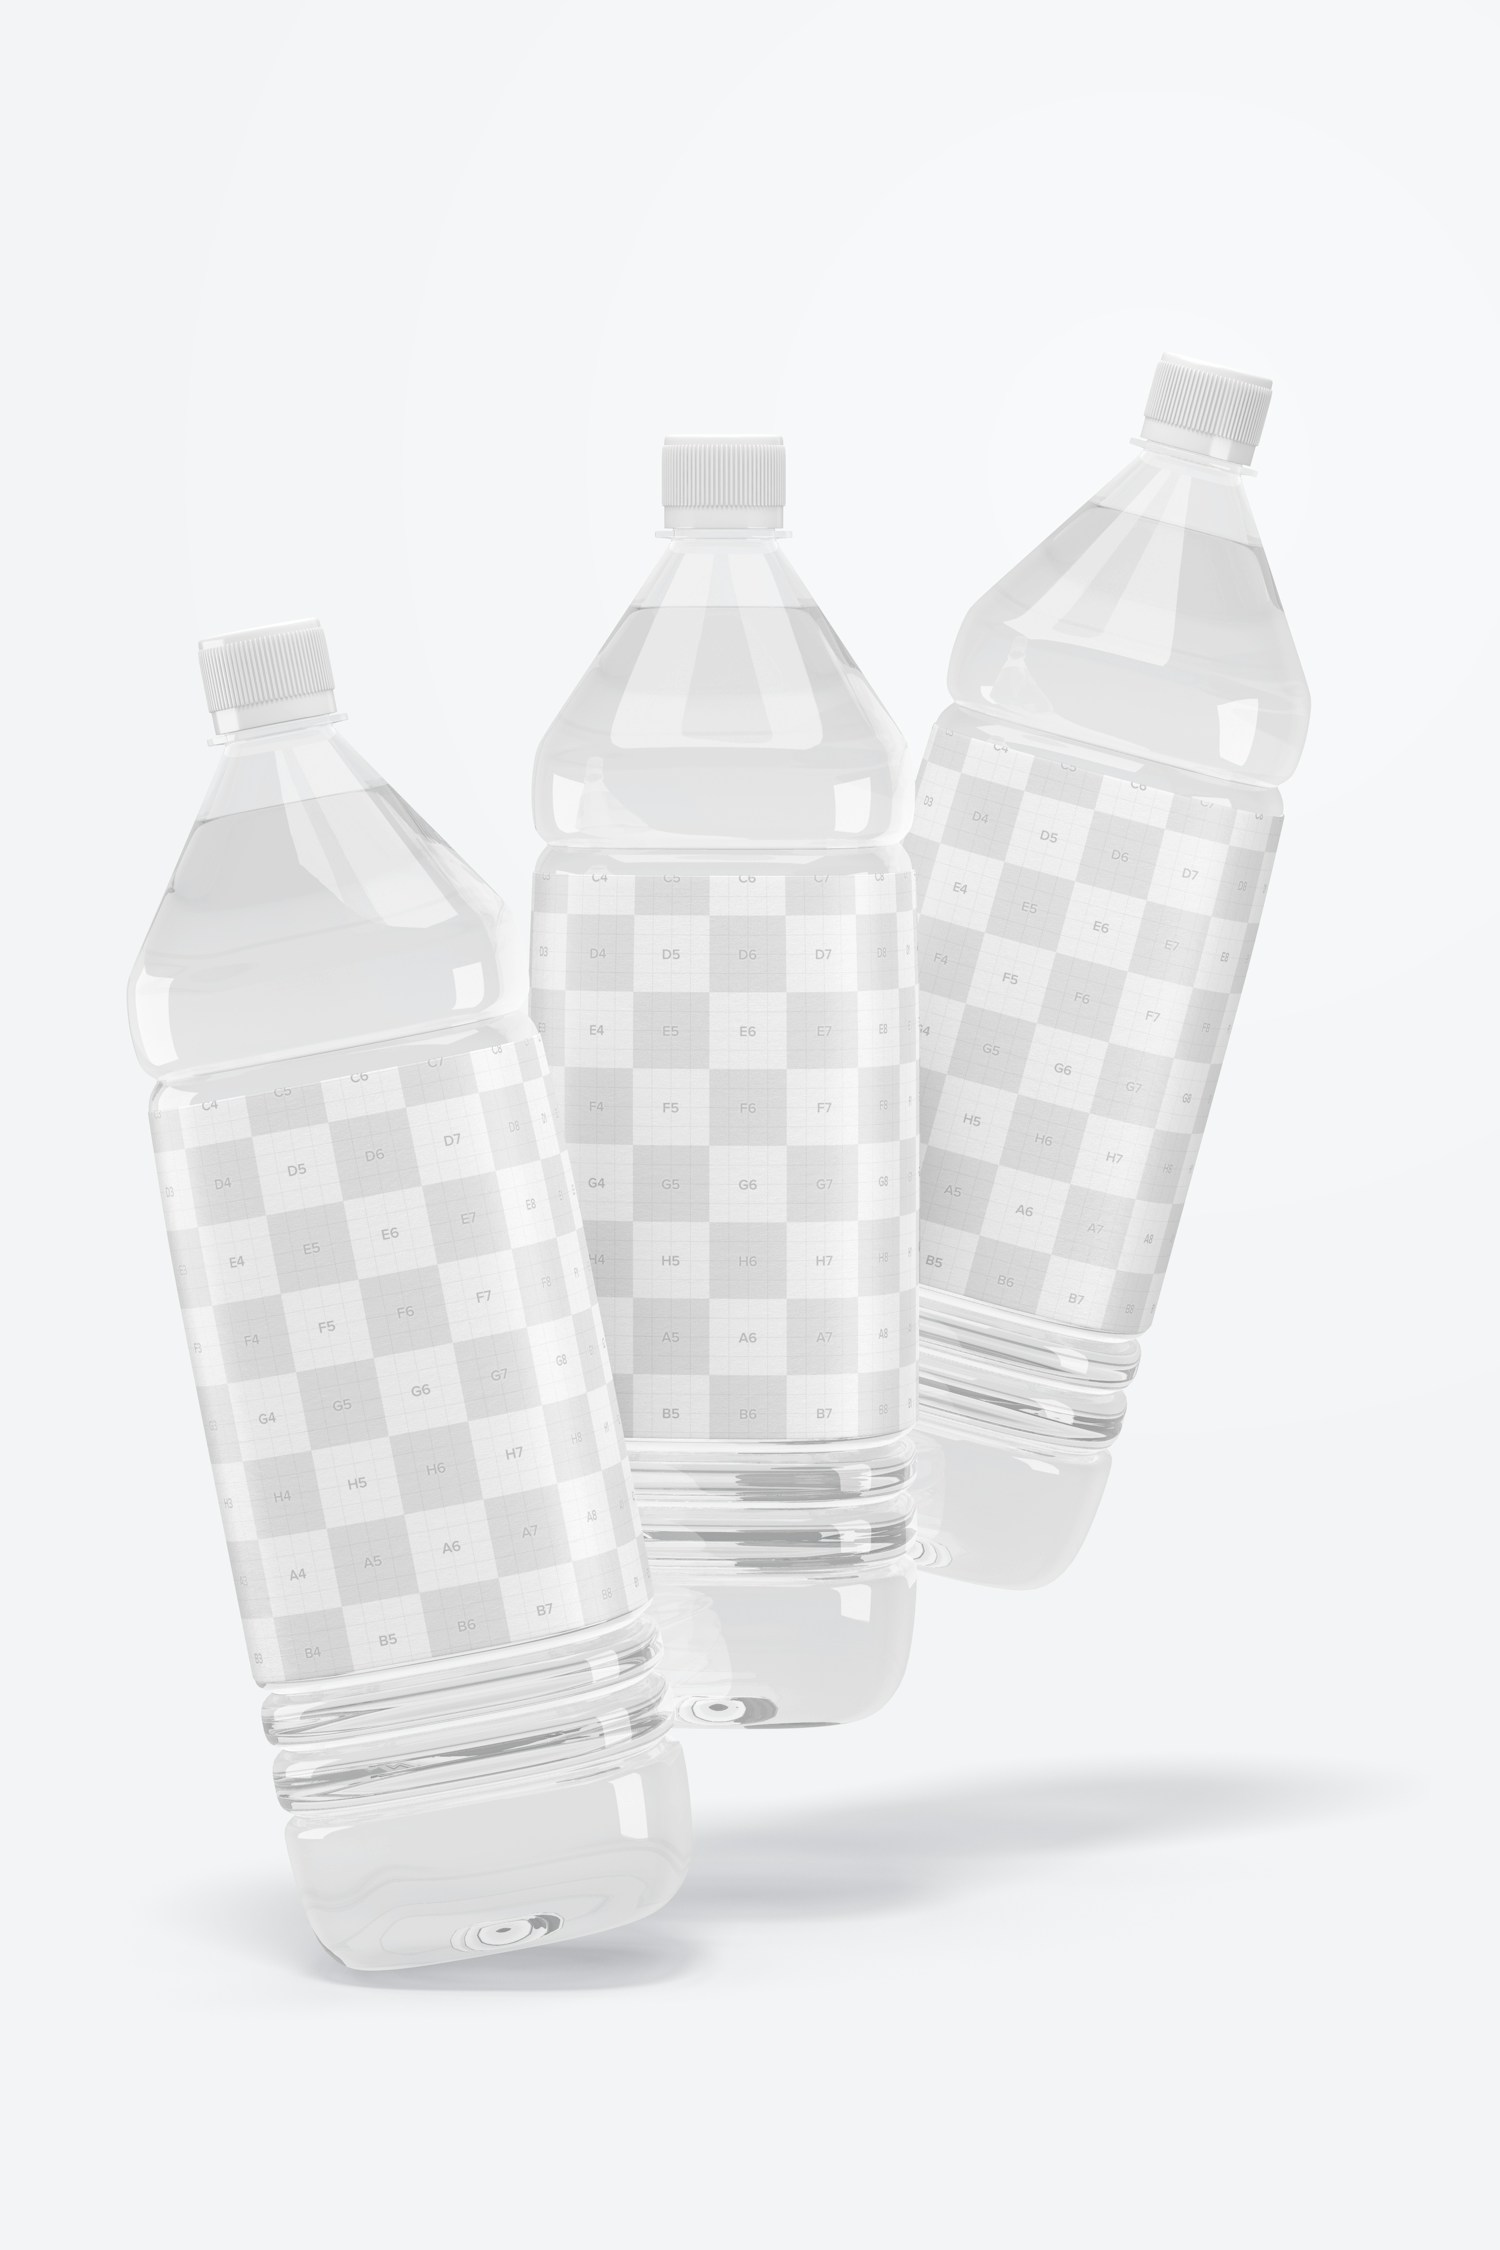 1L Clear Water Bottles Mockup, Falling